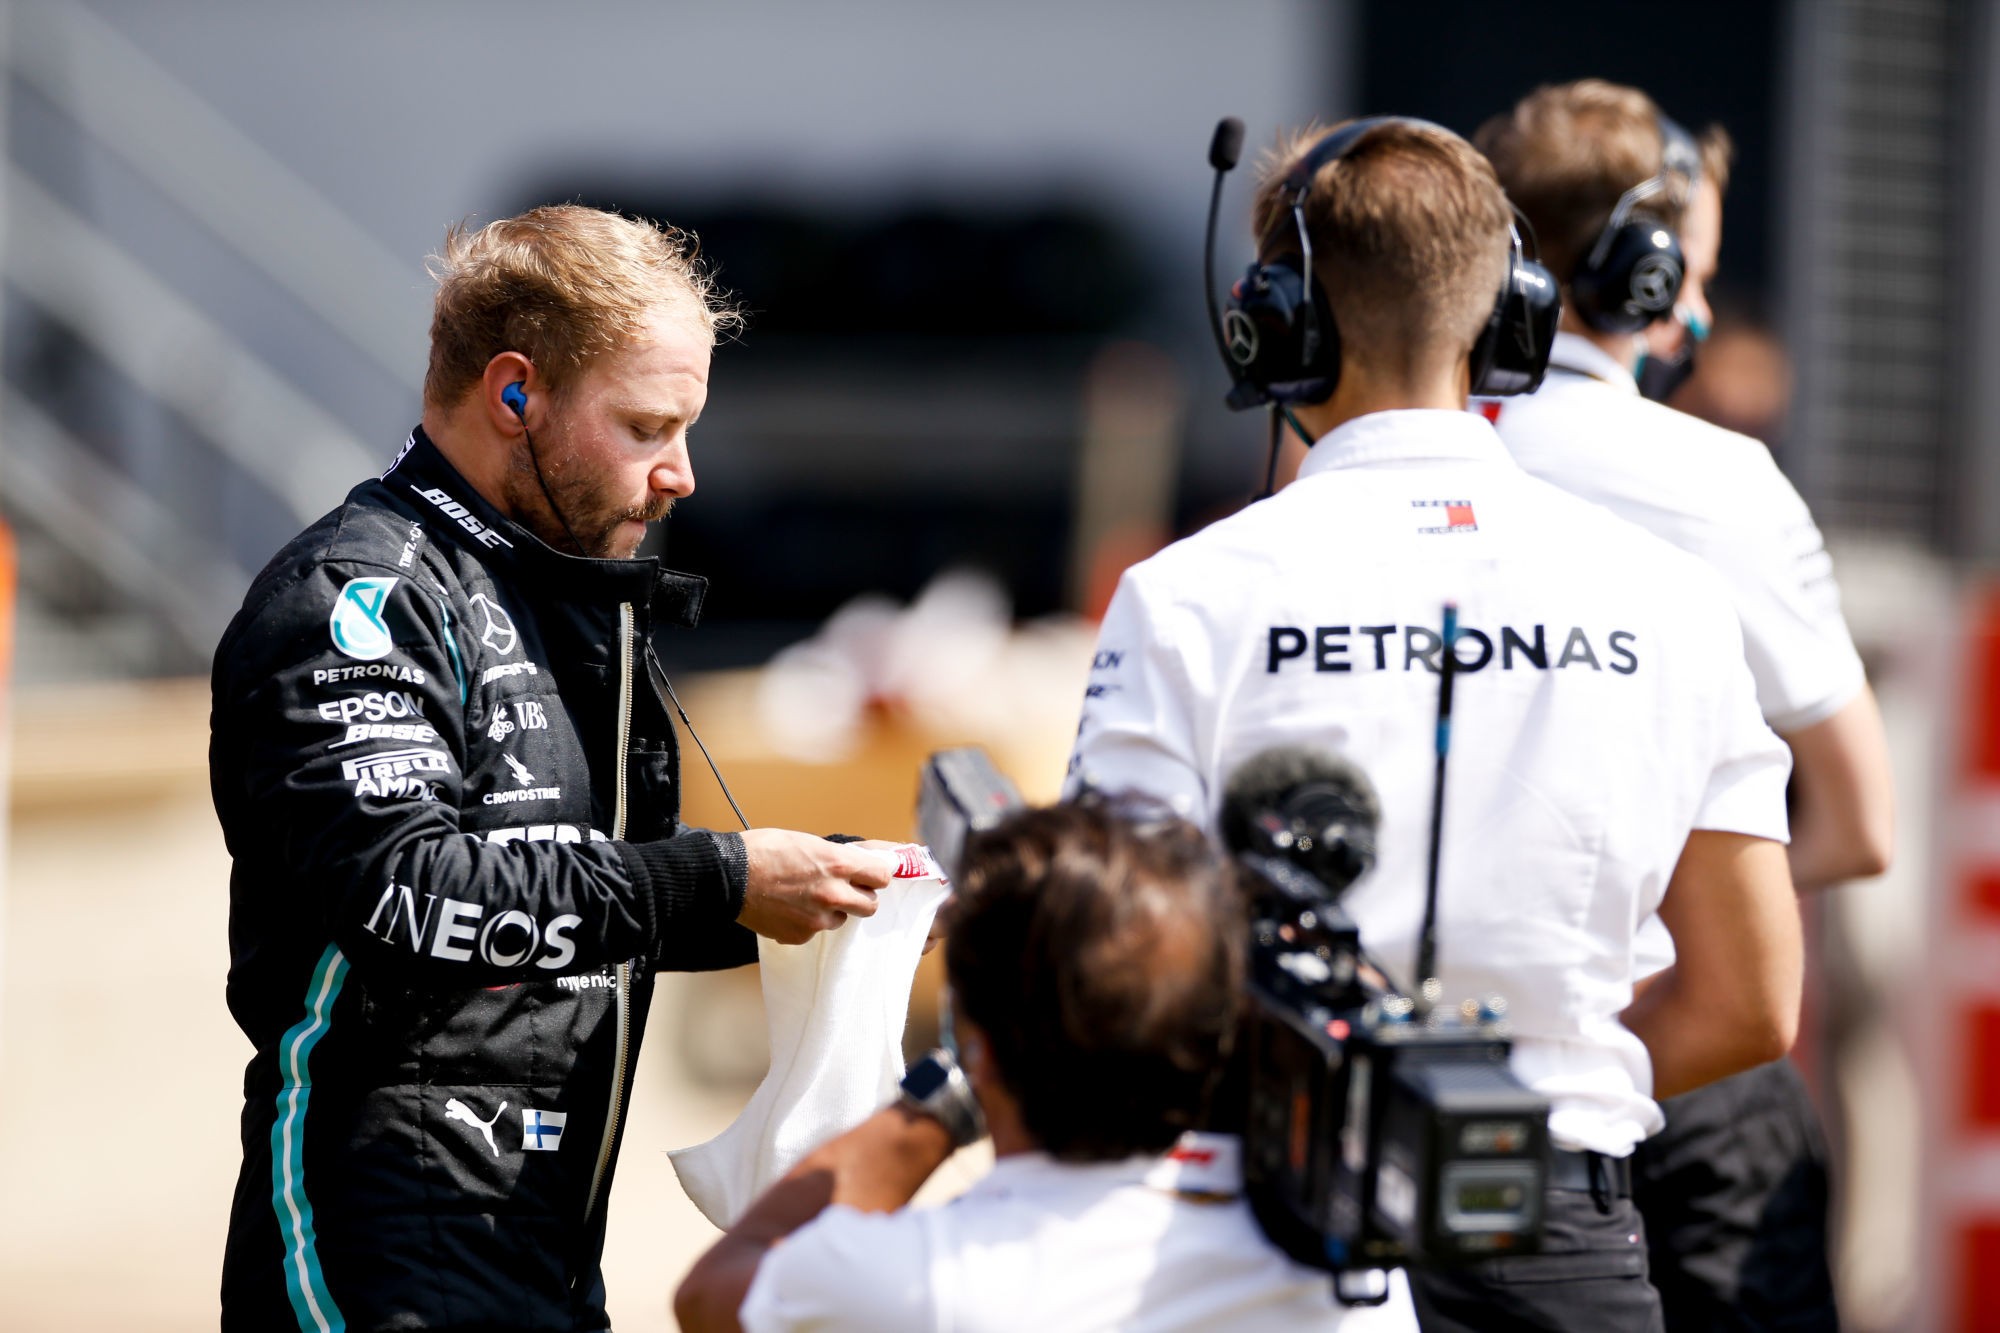 Valtteri Bottas / Mercedes
By Icon Sport